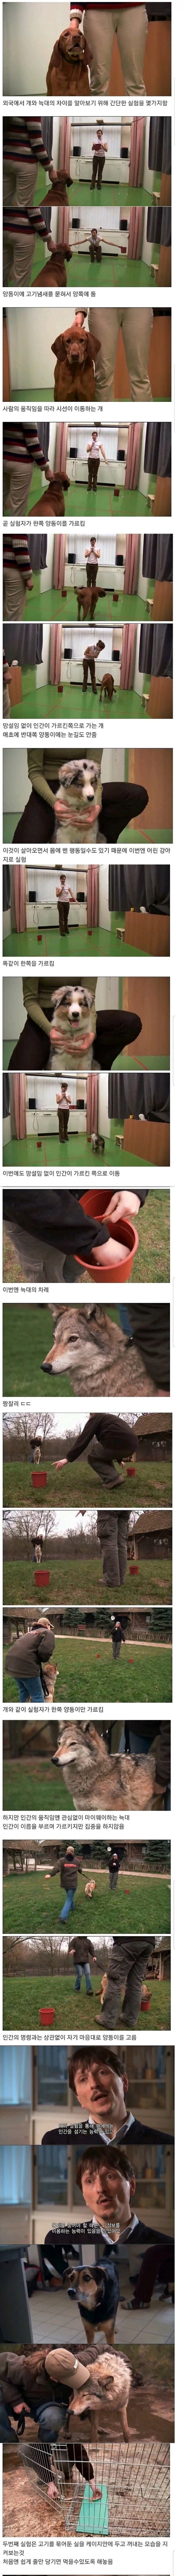 신기신기 개와 늑대의 결정적인 차이점